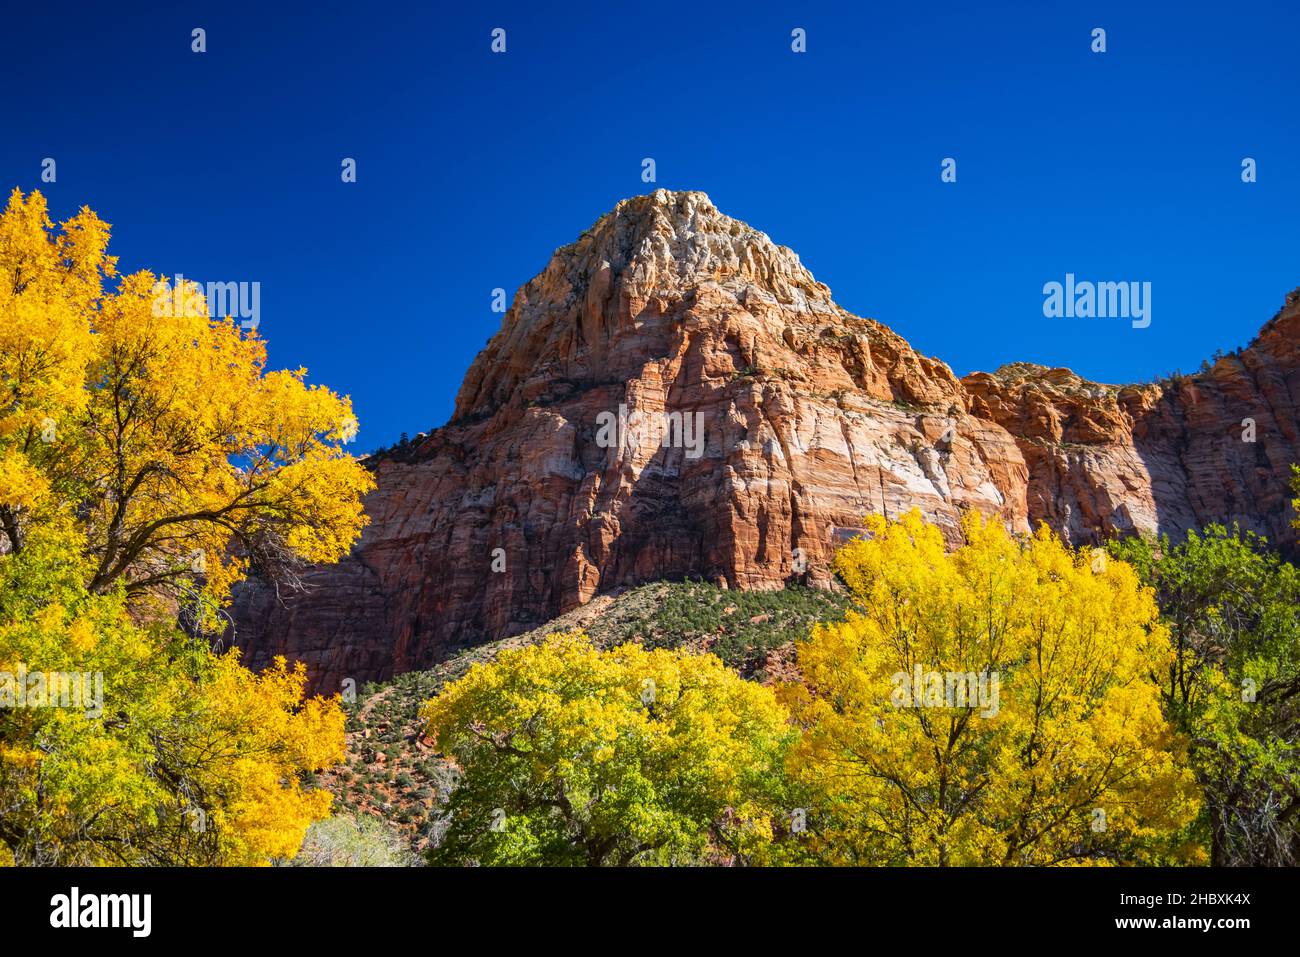 Le est une vue des couleurs d'automne et de Bridge Mountain dans le parc national de Zion, Springdale, Washington County, Utah, États-Unis. Banque D'Images